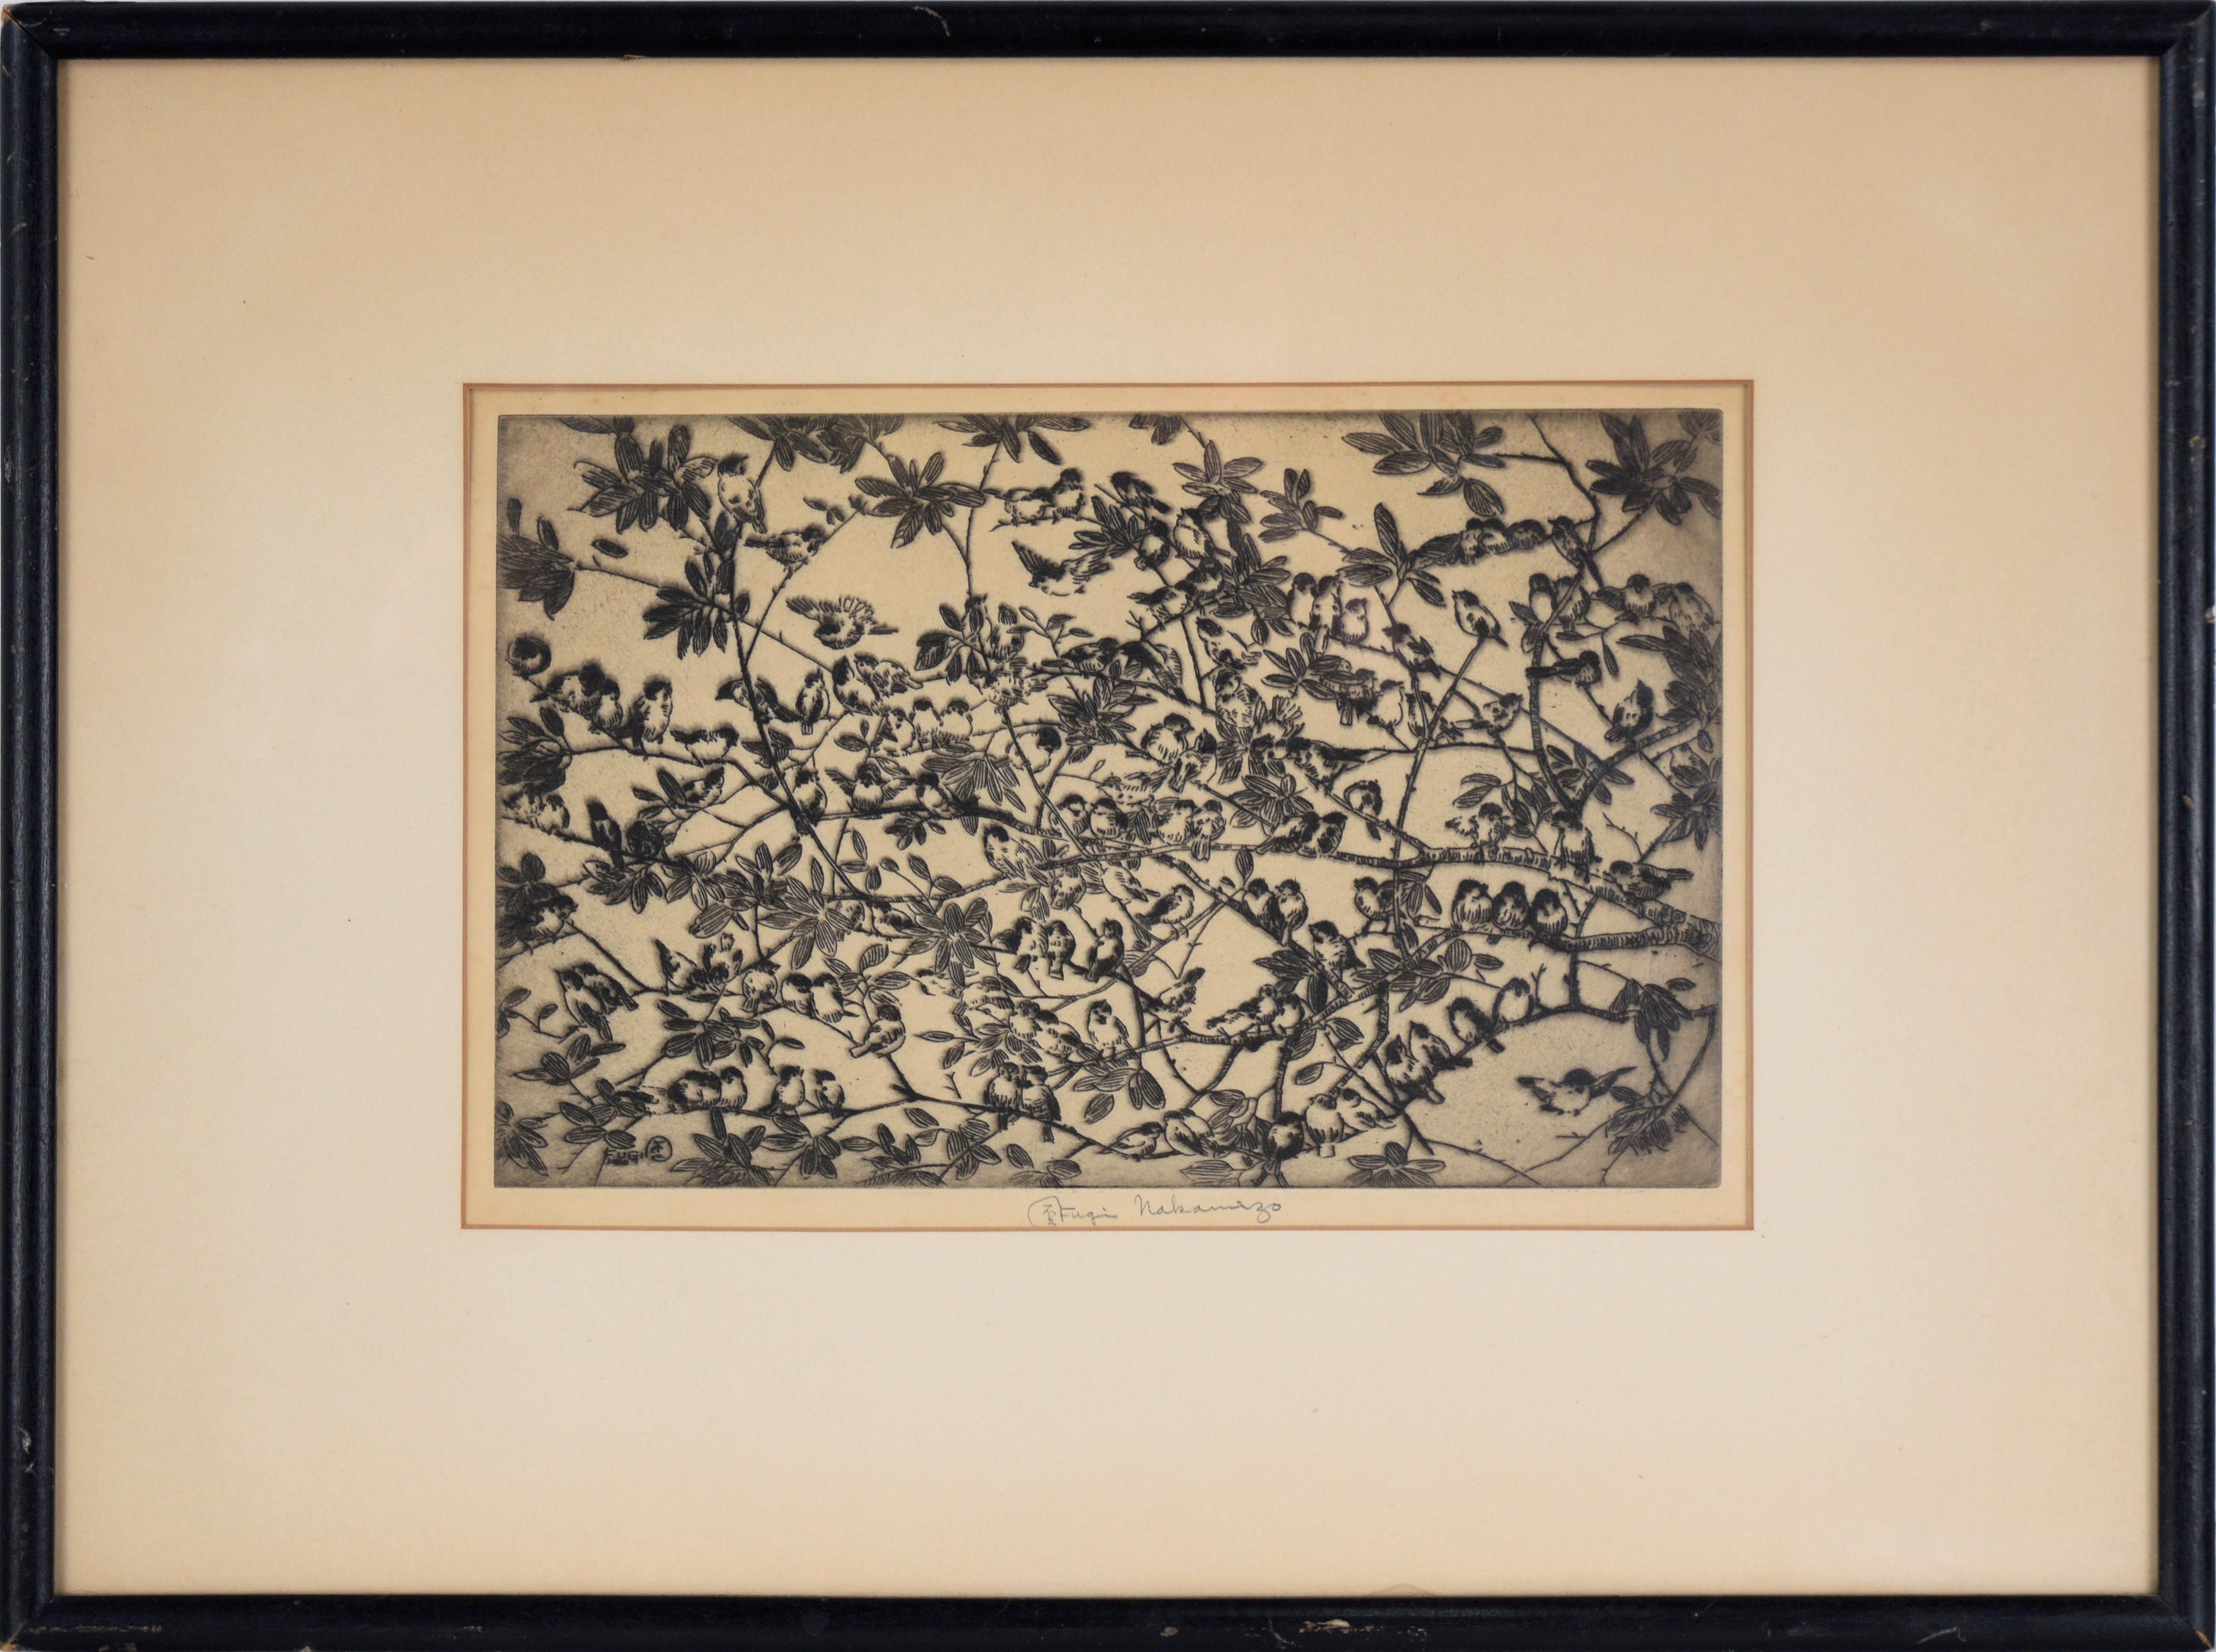 Fugi Nakamizo Landscape Print – Vogel auf Zweigen – Lithographie in Tinte auf Papier – Auflage von 75 Stück